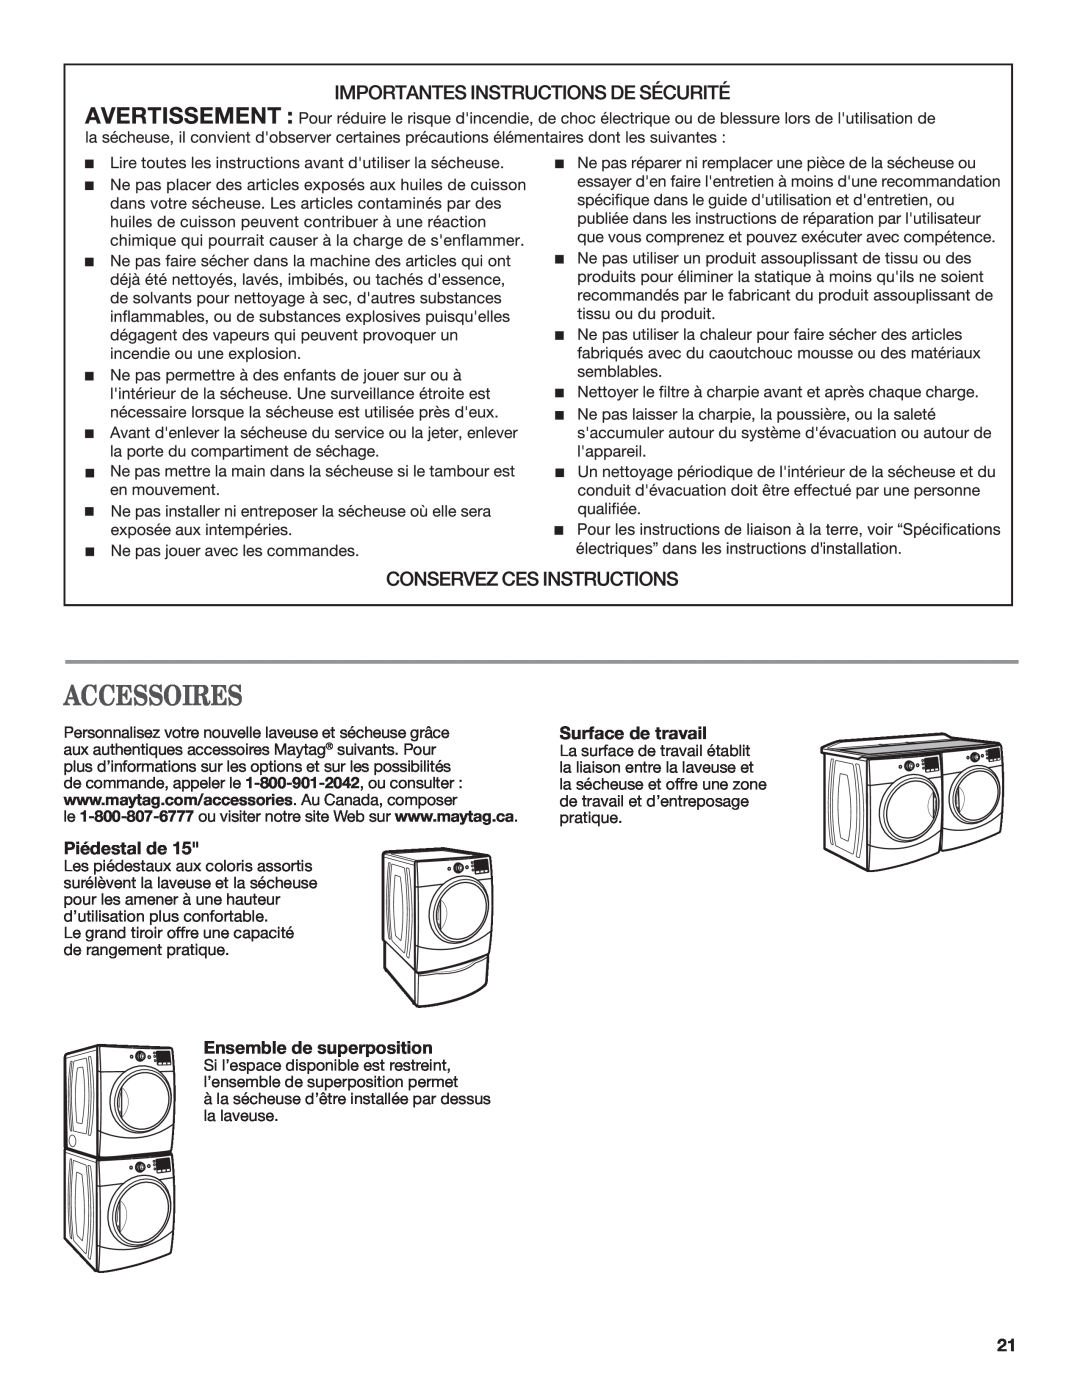 Maytag W10385091A - SP, W10385090A manual Accessoires, Piédestal de, Ensemble de superposition, Surface de travail 